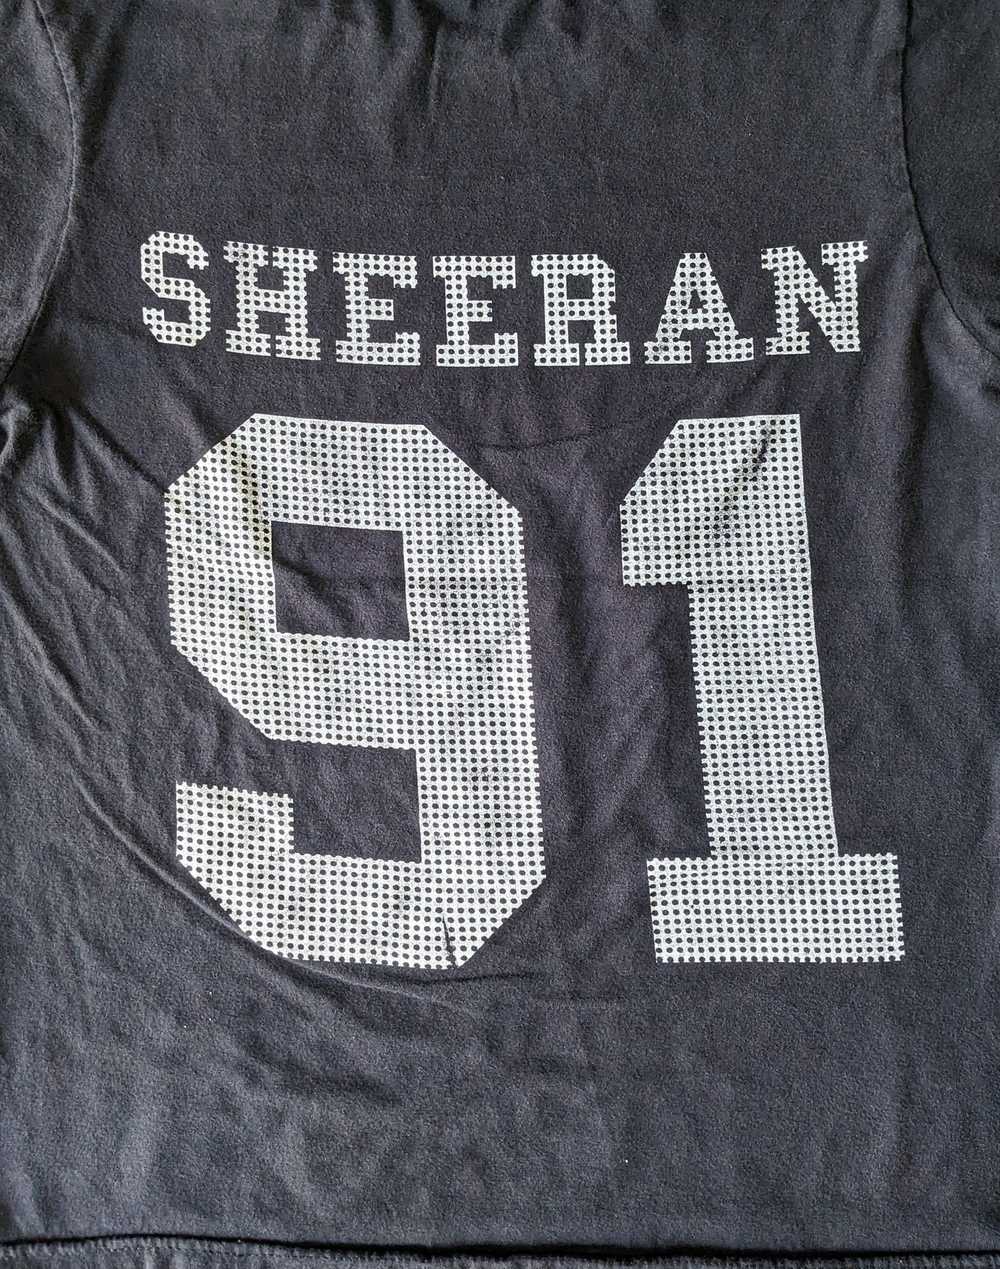 Band Tees × Rock T Shirt Ed Sheeran no. 91 t-shirt - image 5